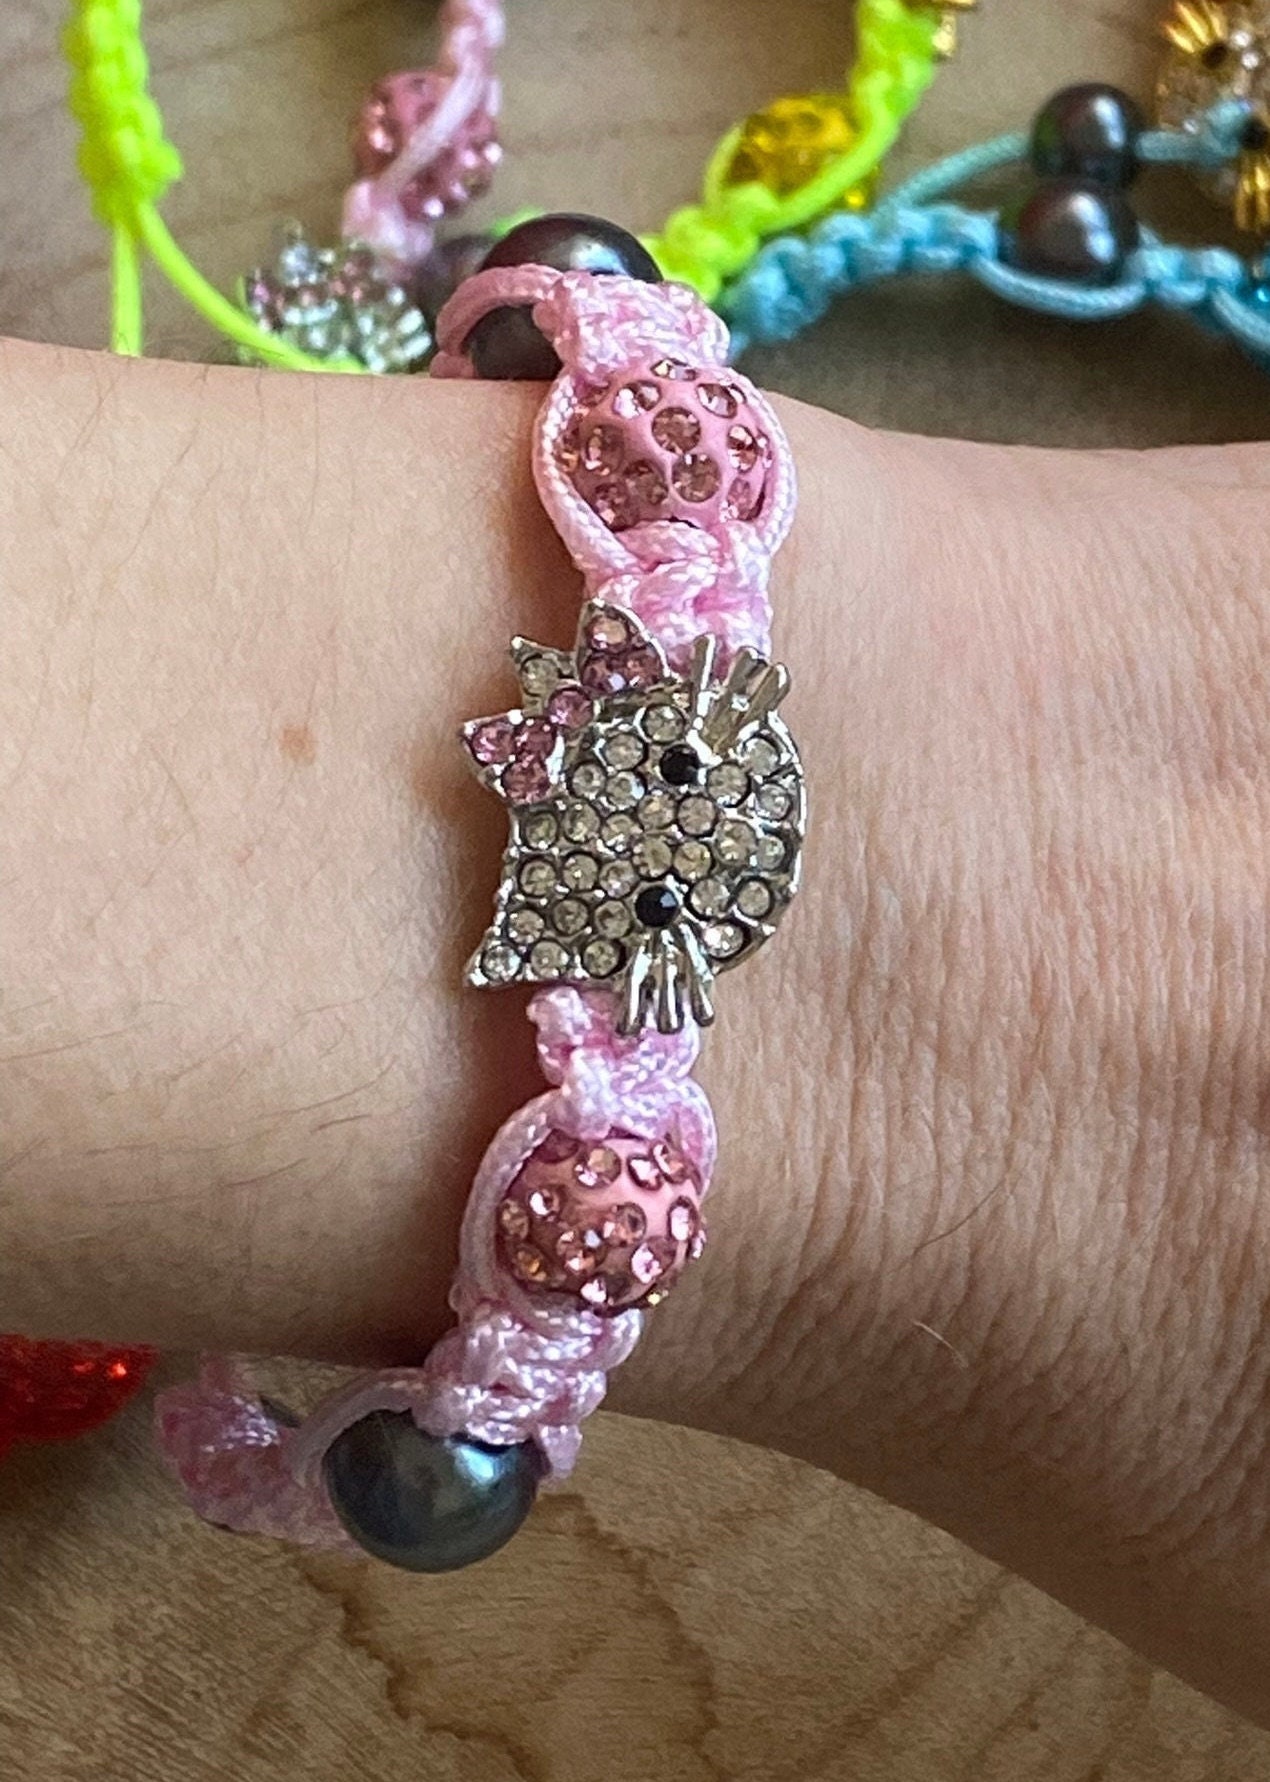 Girls Charm Bracelet Crystal Enamel Flower Adjustable Handcrafted Pink  White